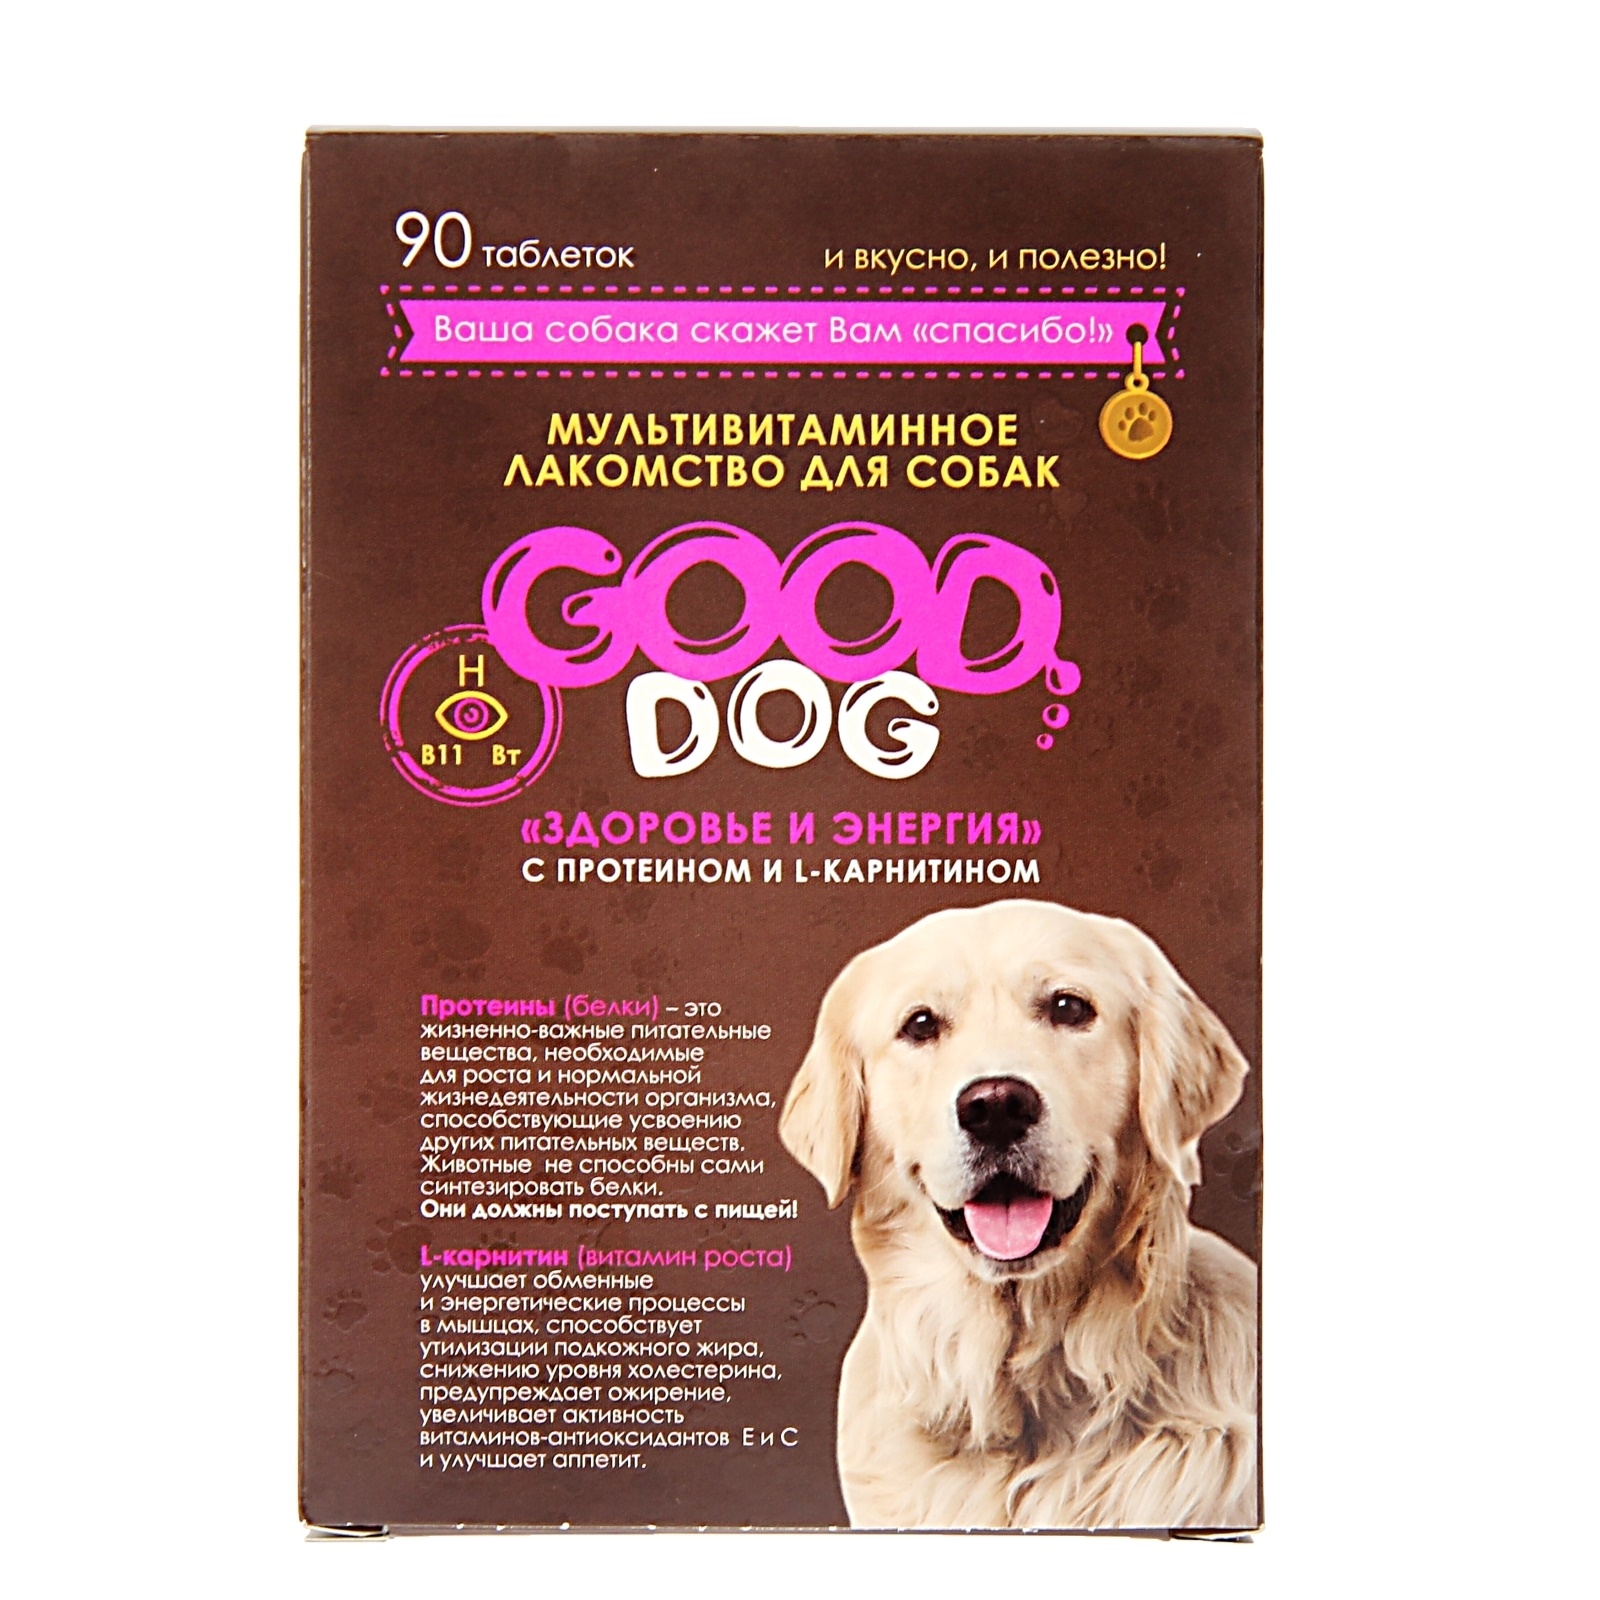 Мультивитаминное лакомство для собак Good Dog Здоровье и энергия, 90 табл